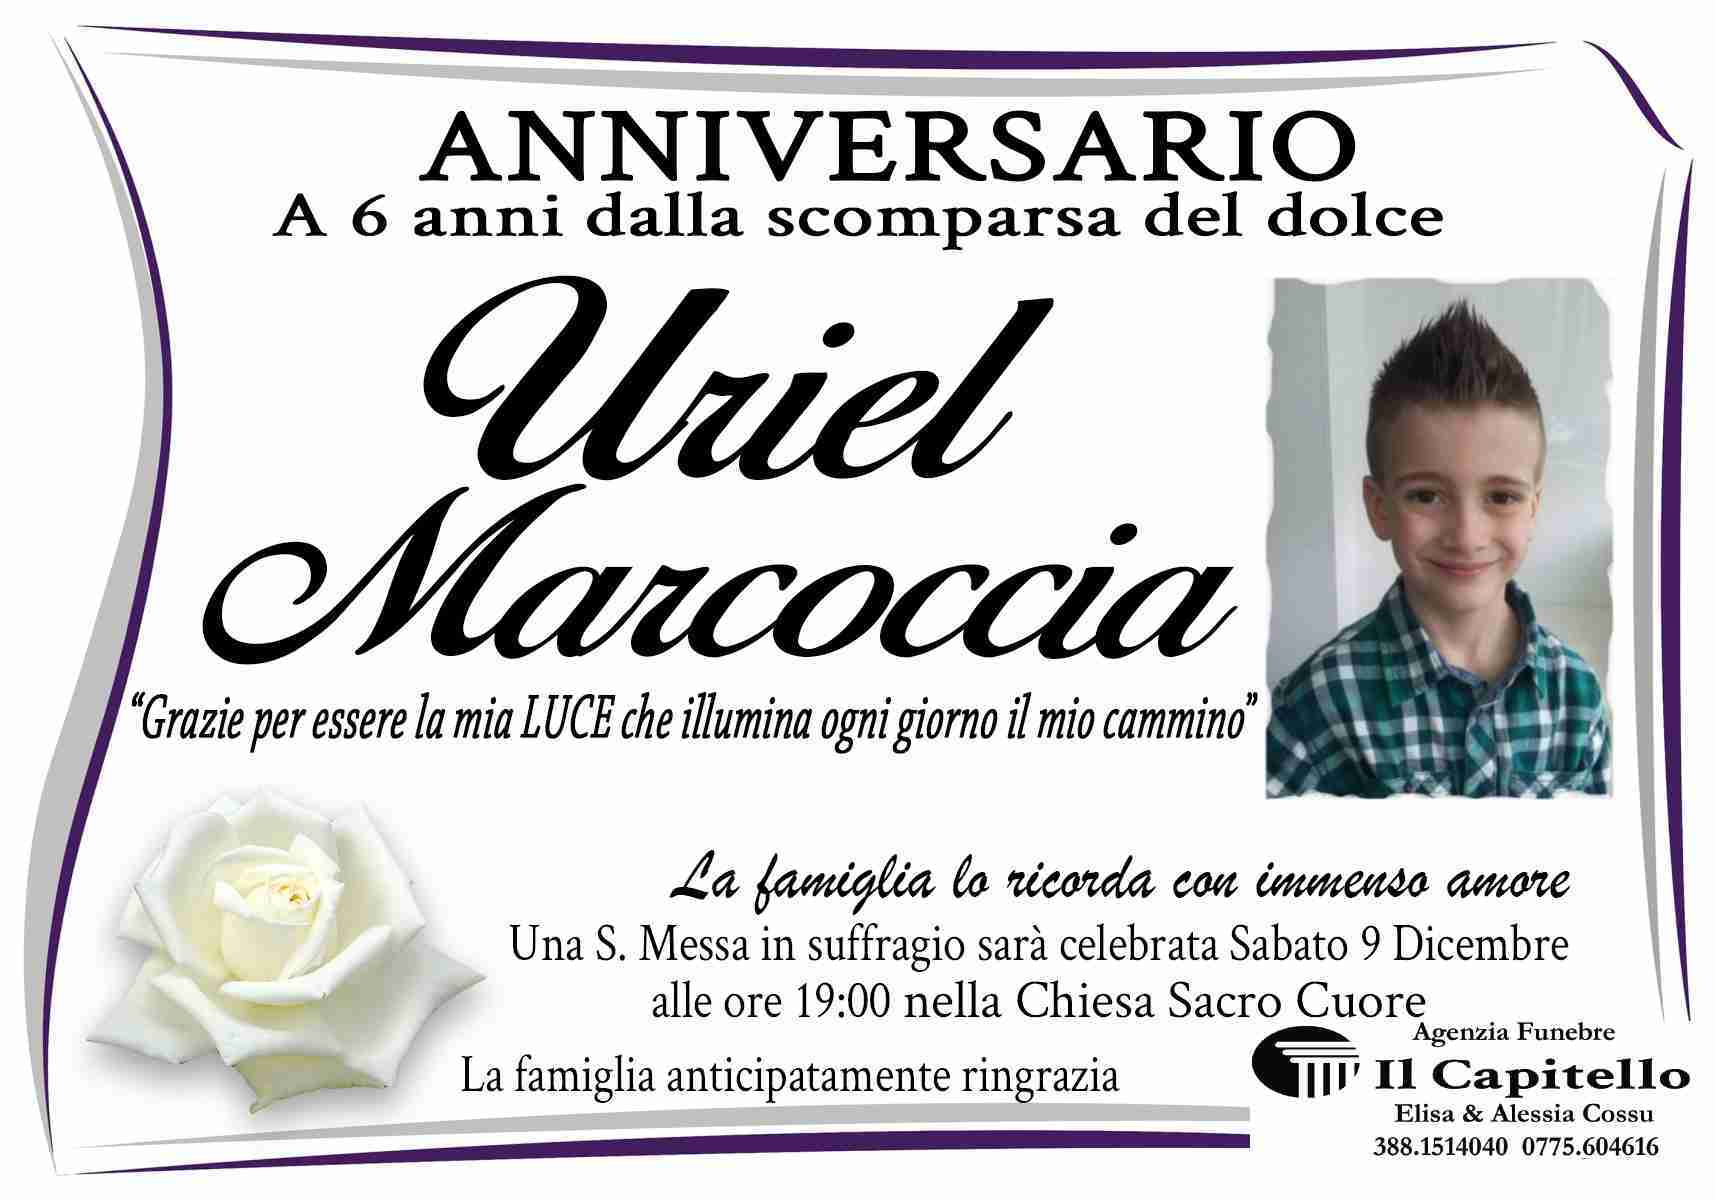 Uriel Marcoccia